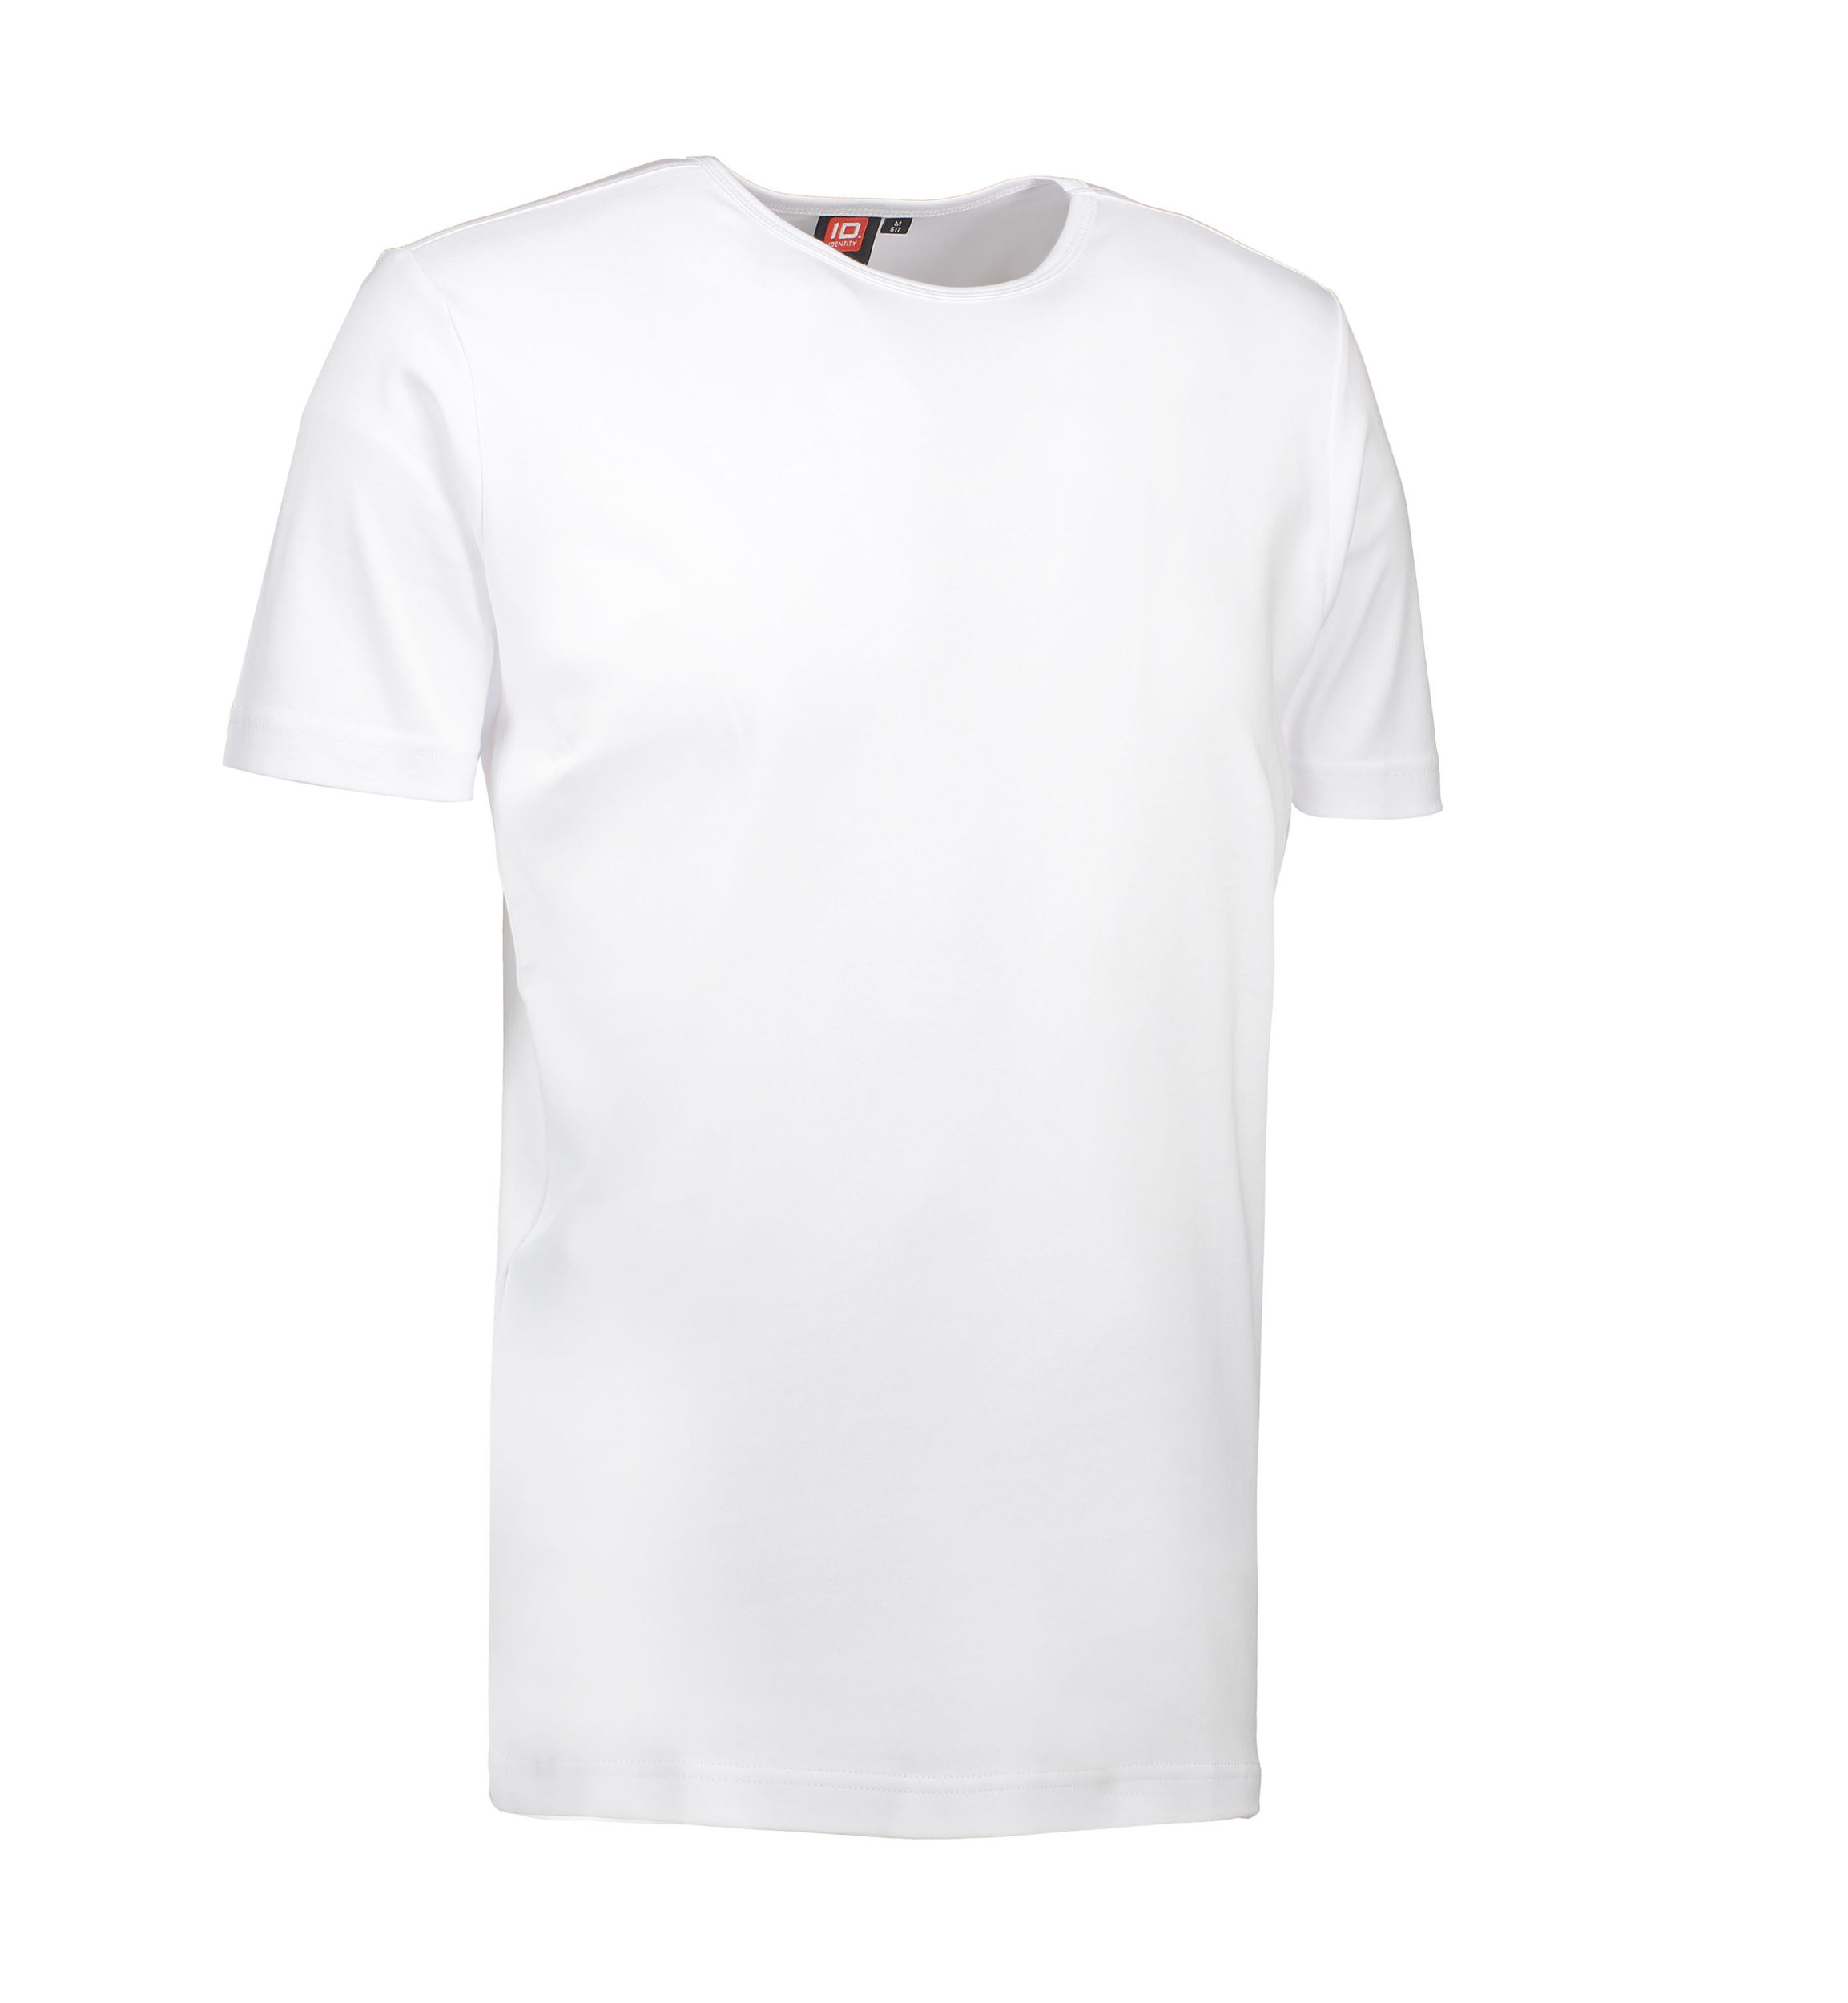 Billede af Hvid t-shirt med rund hals til mænd - XL hos Sygeplejebutikken.dk